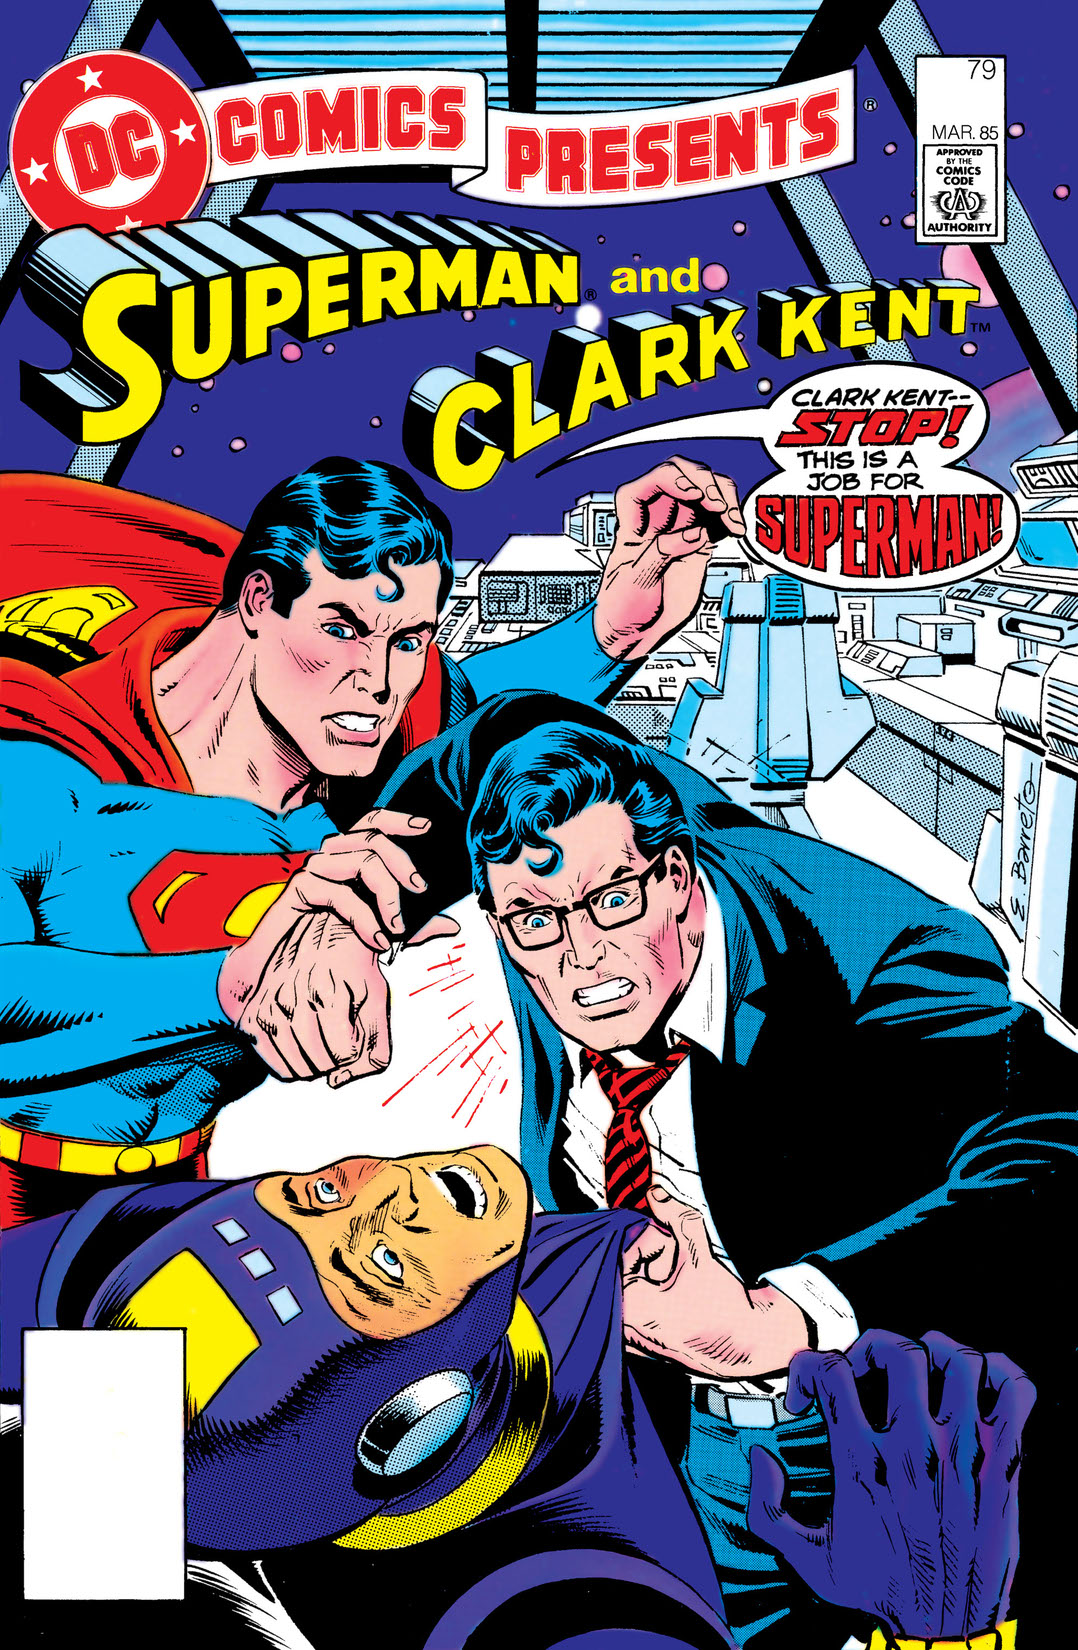 DC Comics Presents (1978-1986) #79 preview images